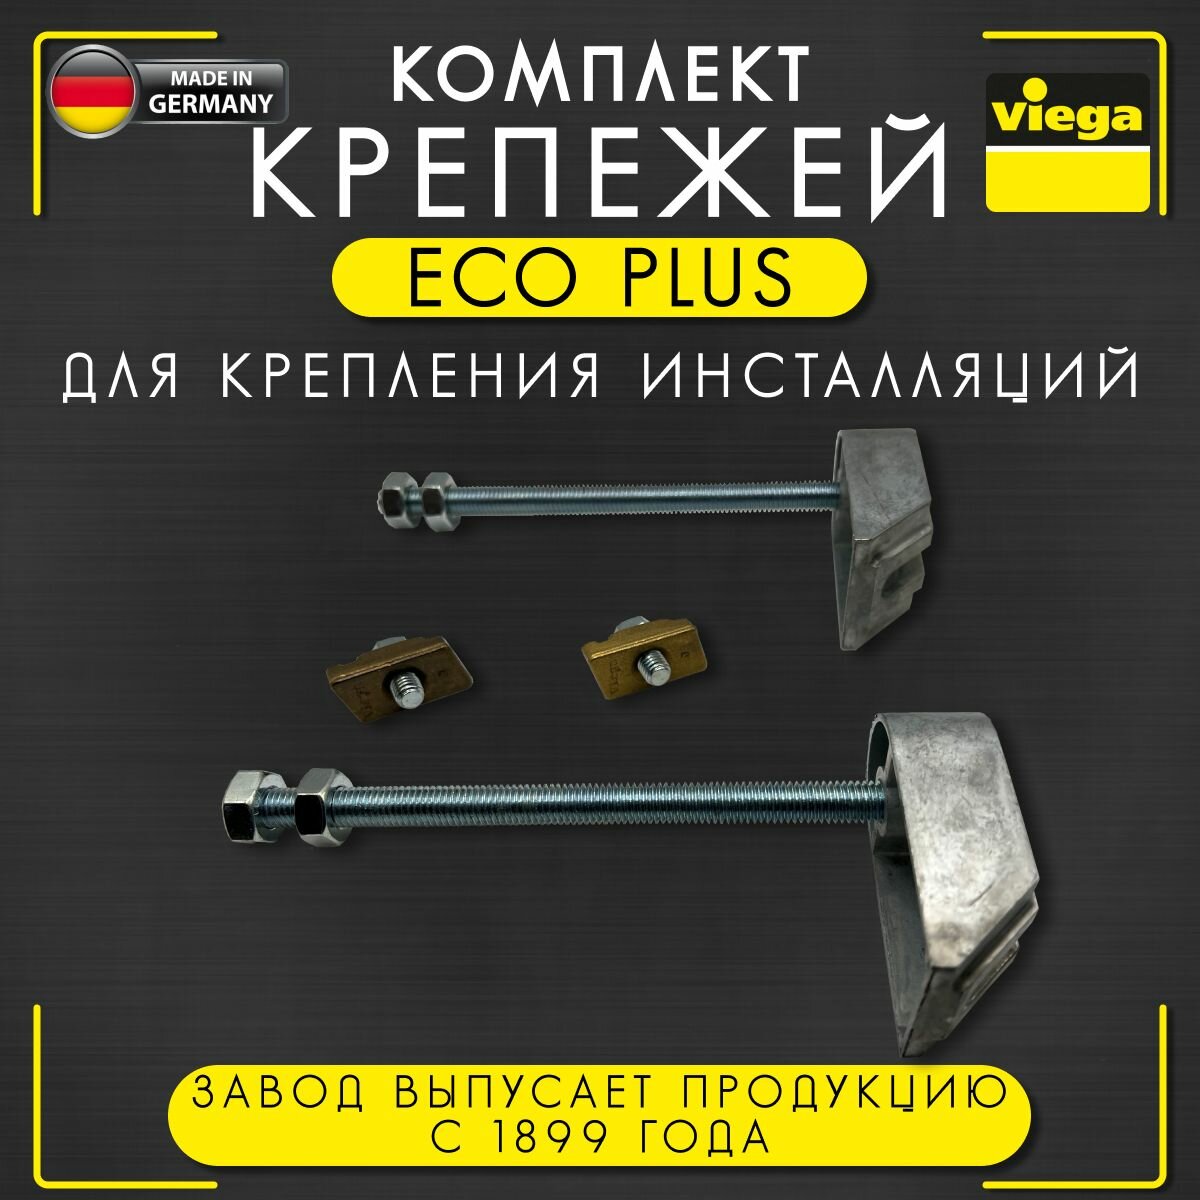 Крепеж Eco Plus для крепления инсталляций Viega 8173, арт, 460440, комплект